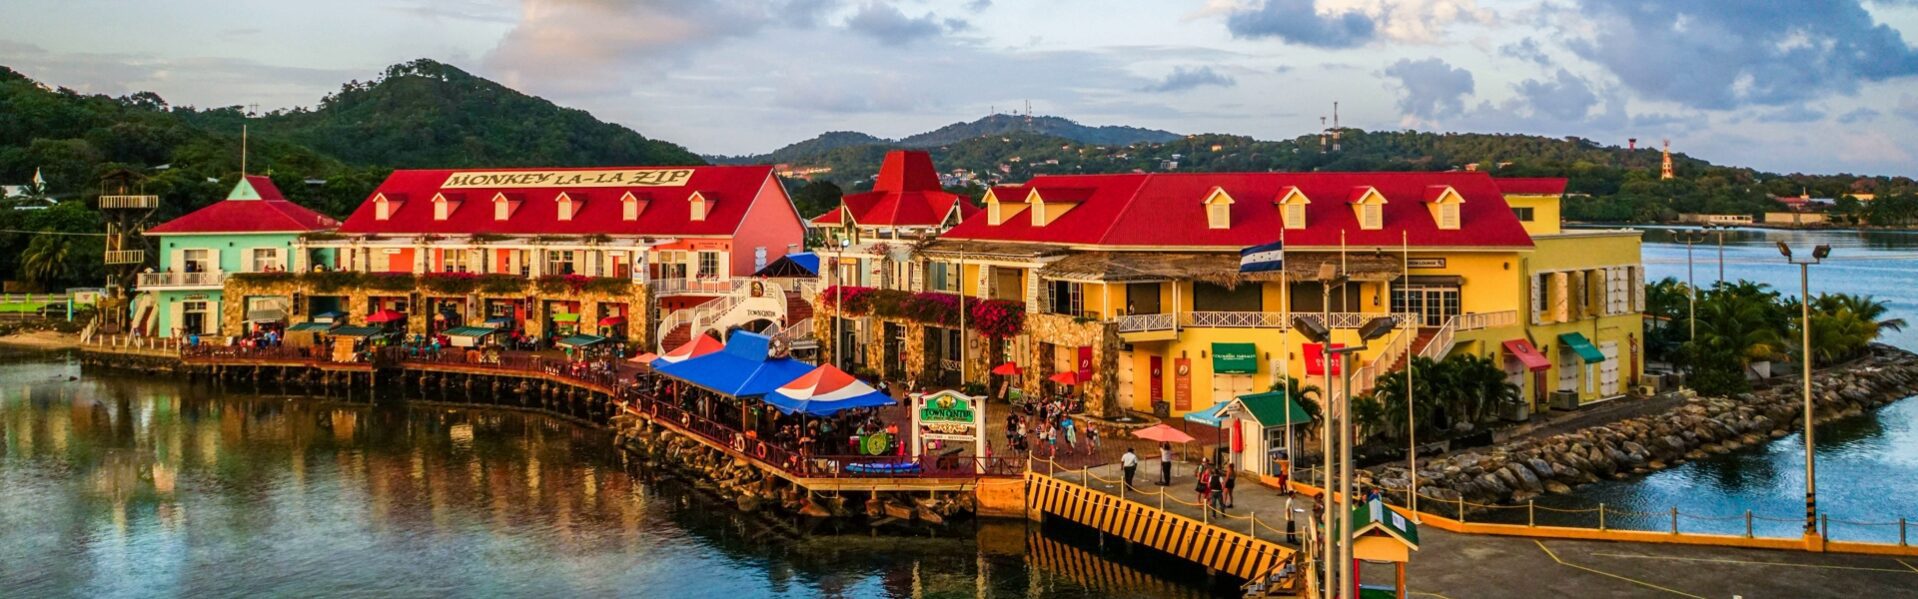 Honduras reisinformatie voor jouw vakantie